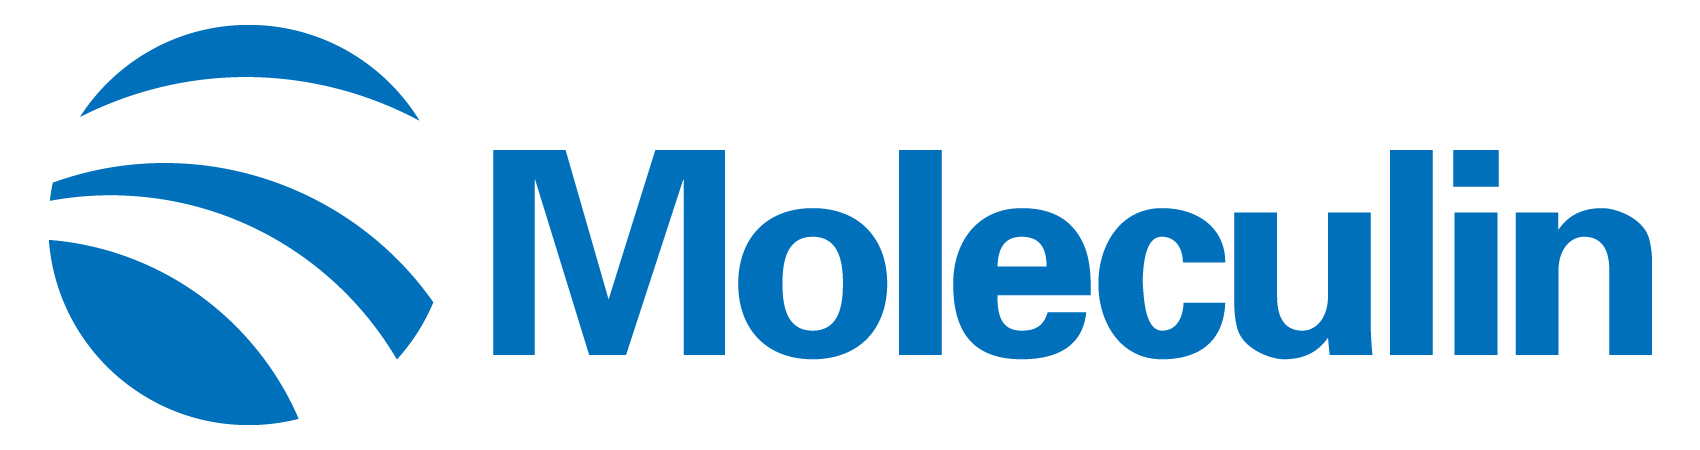 moleculin-logo_horiza04.jpg